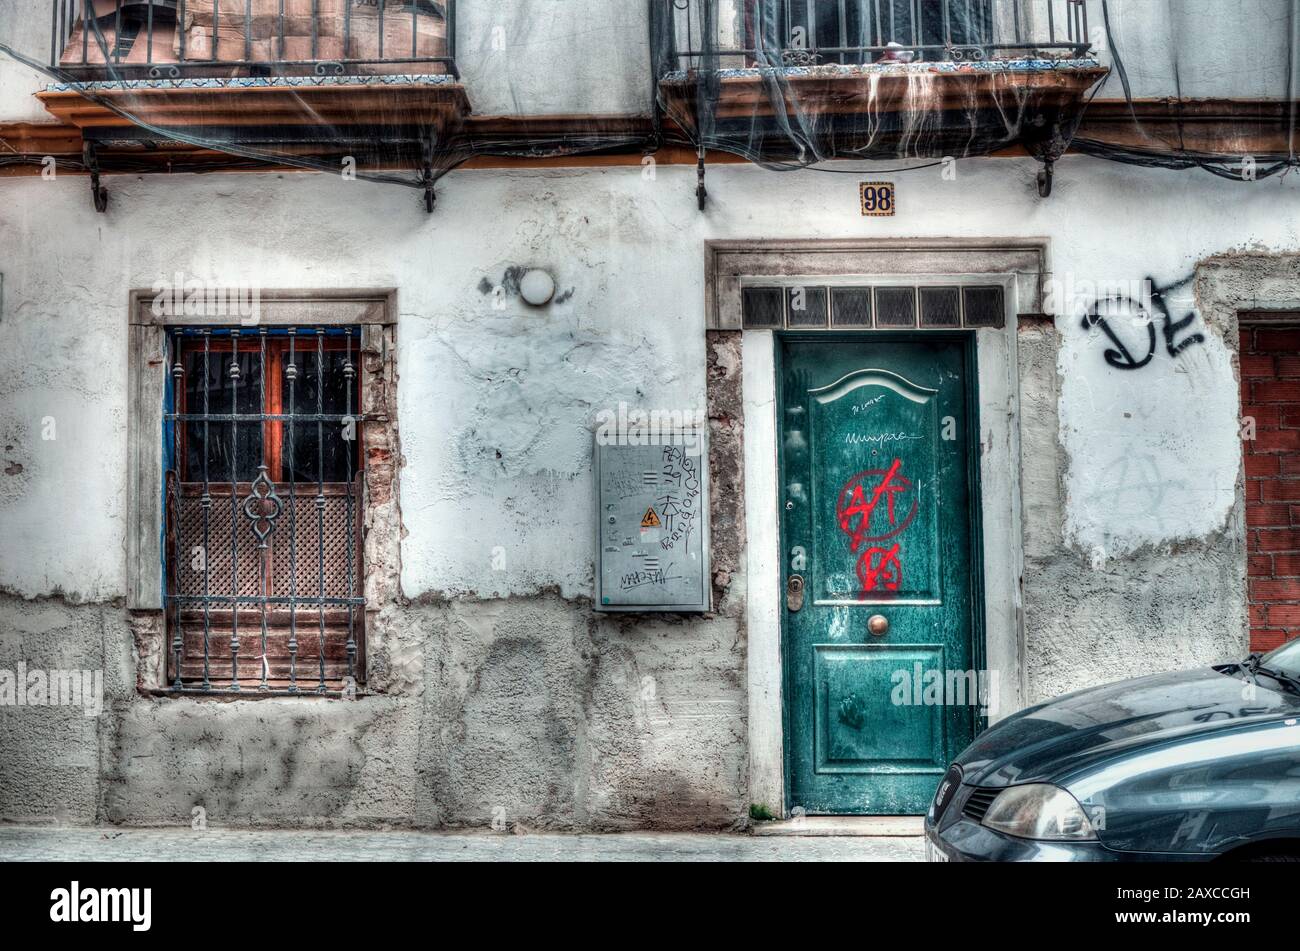 Facade of an old house facade. Street photography. Stock Photo